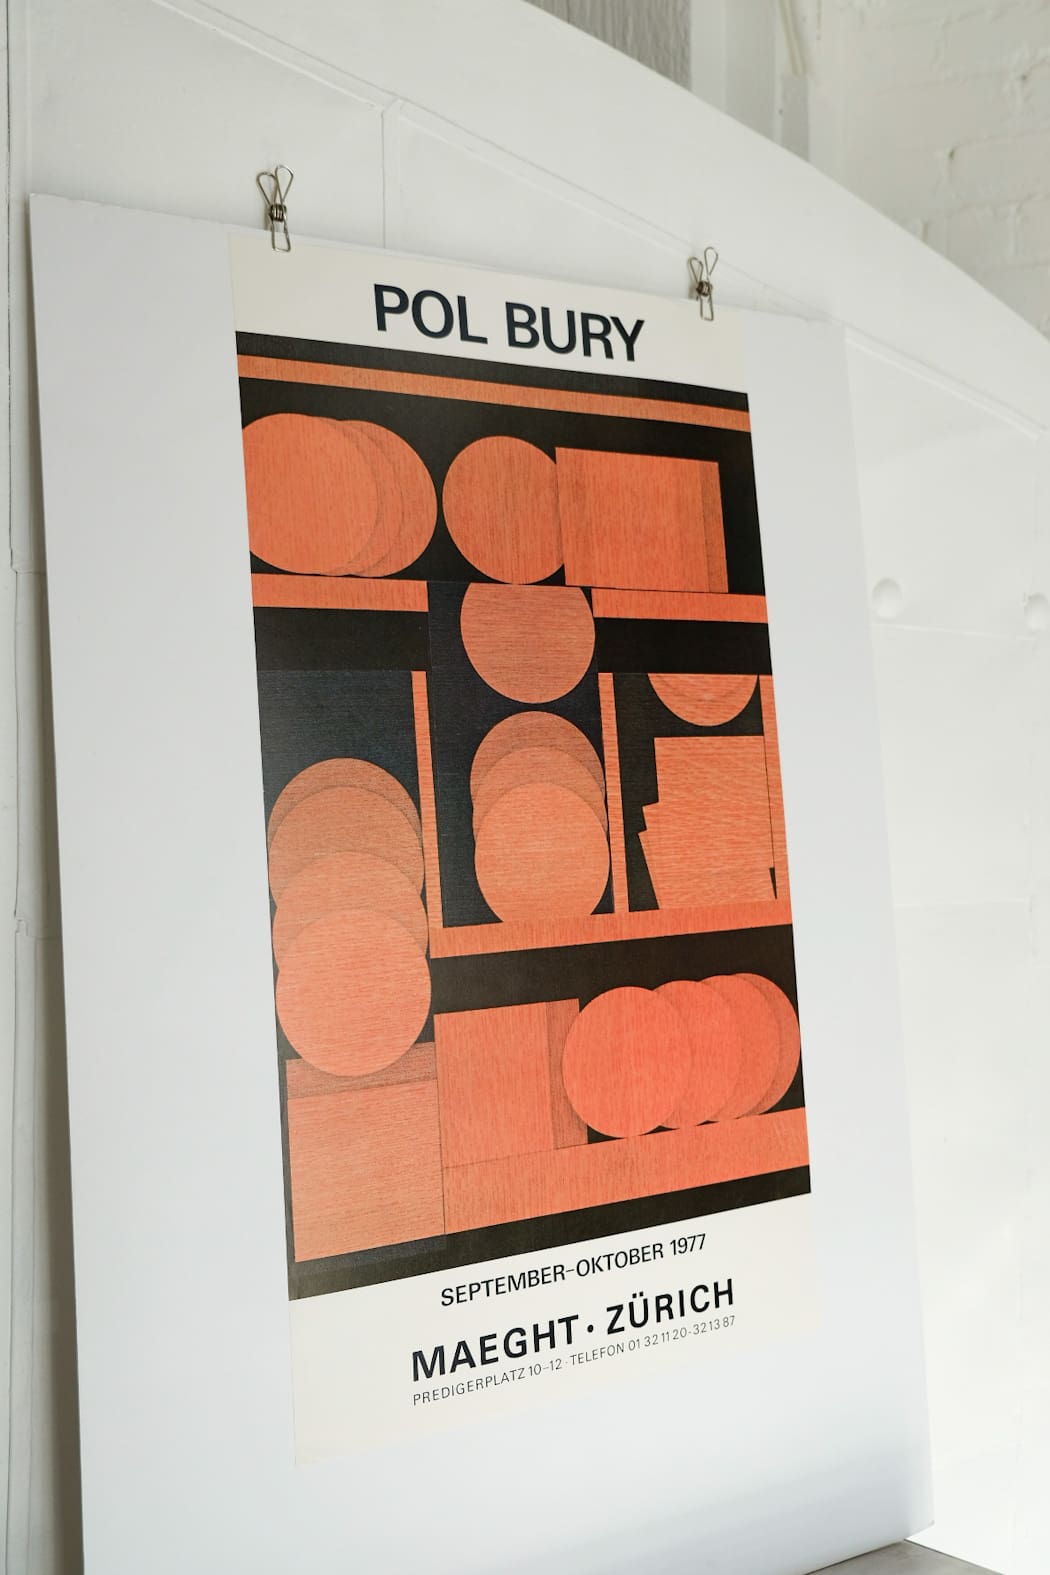 Pol Bury Maeght Zurich 1977 Exhibition Print